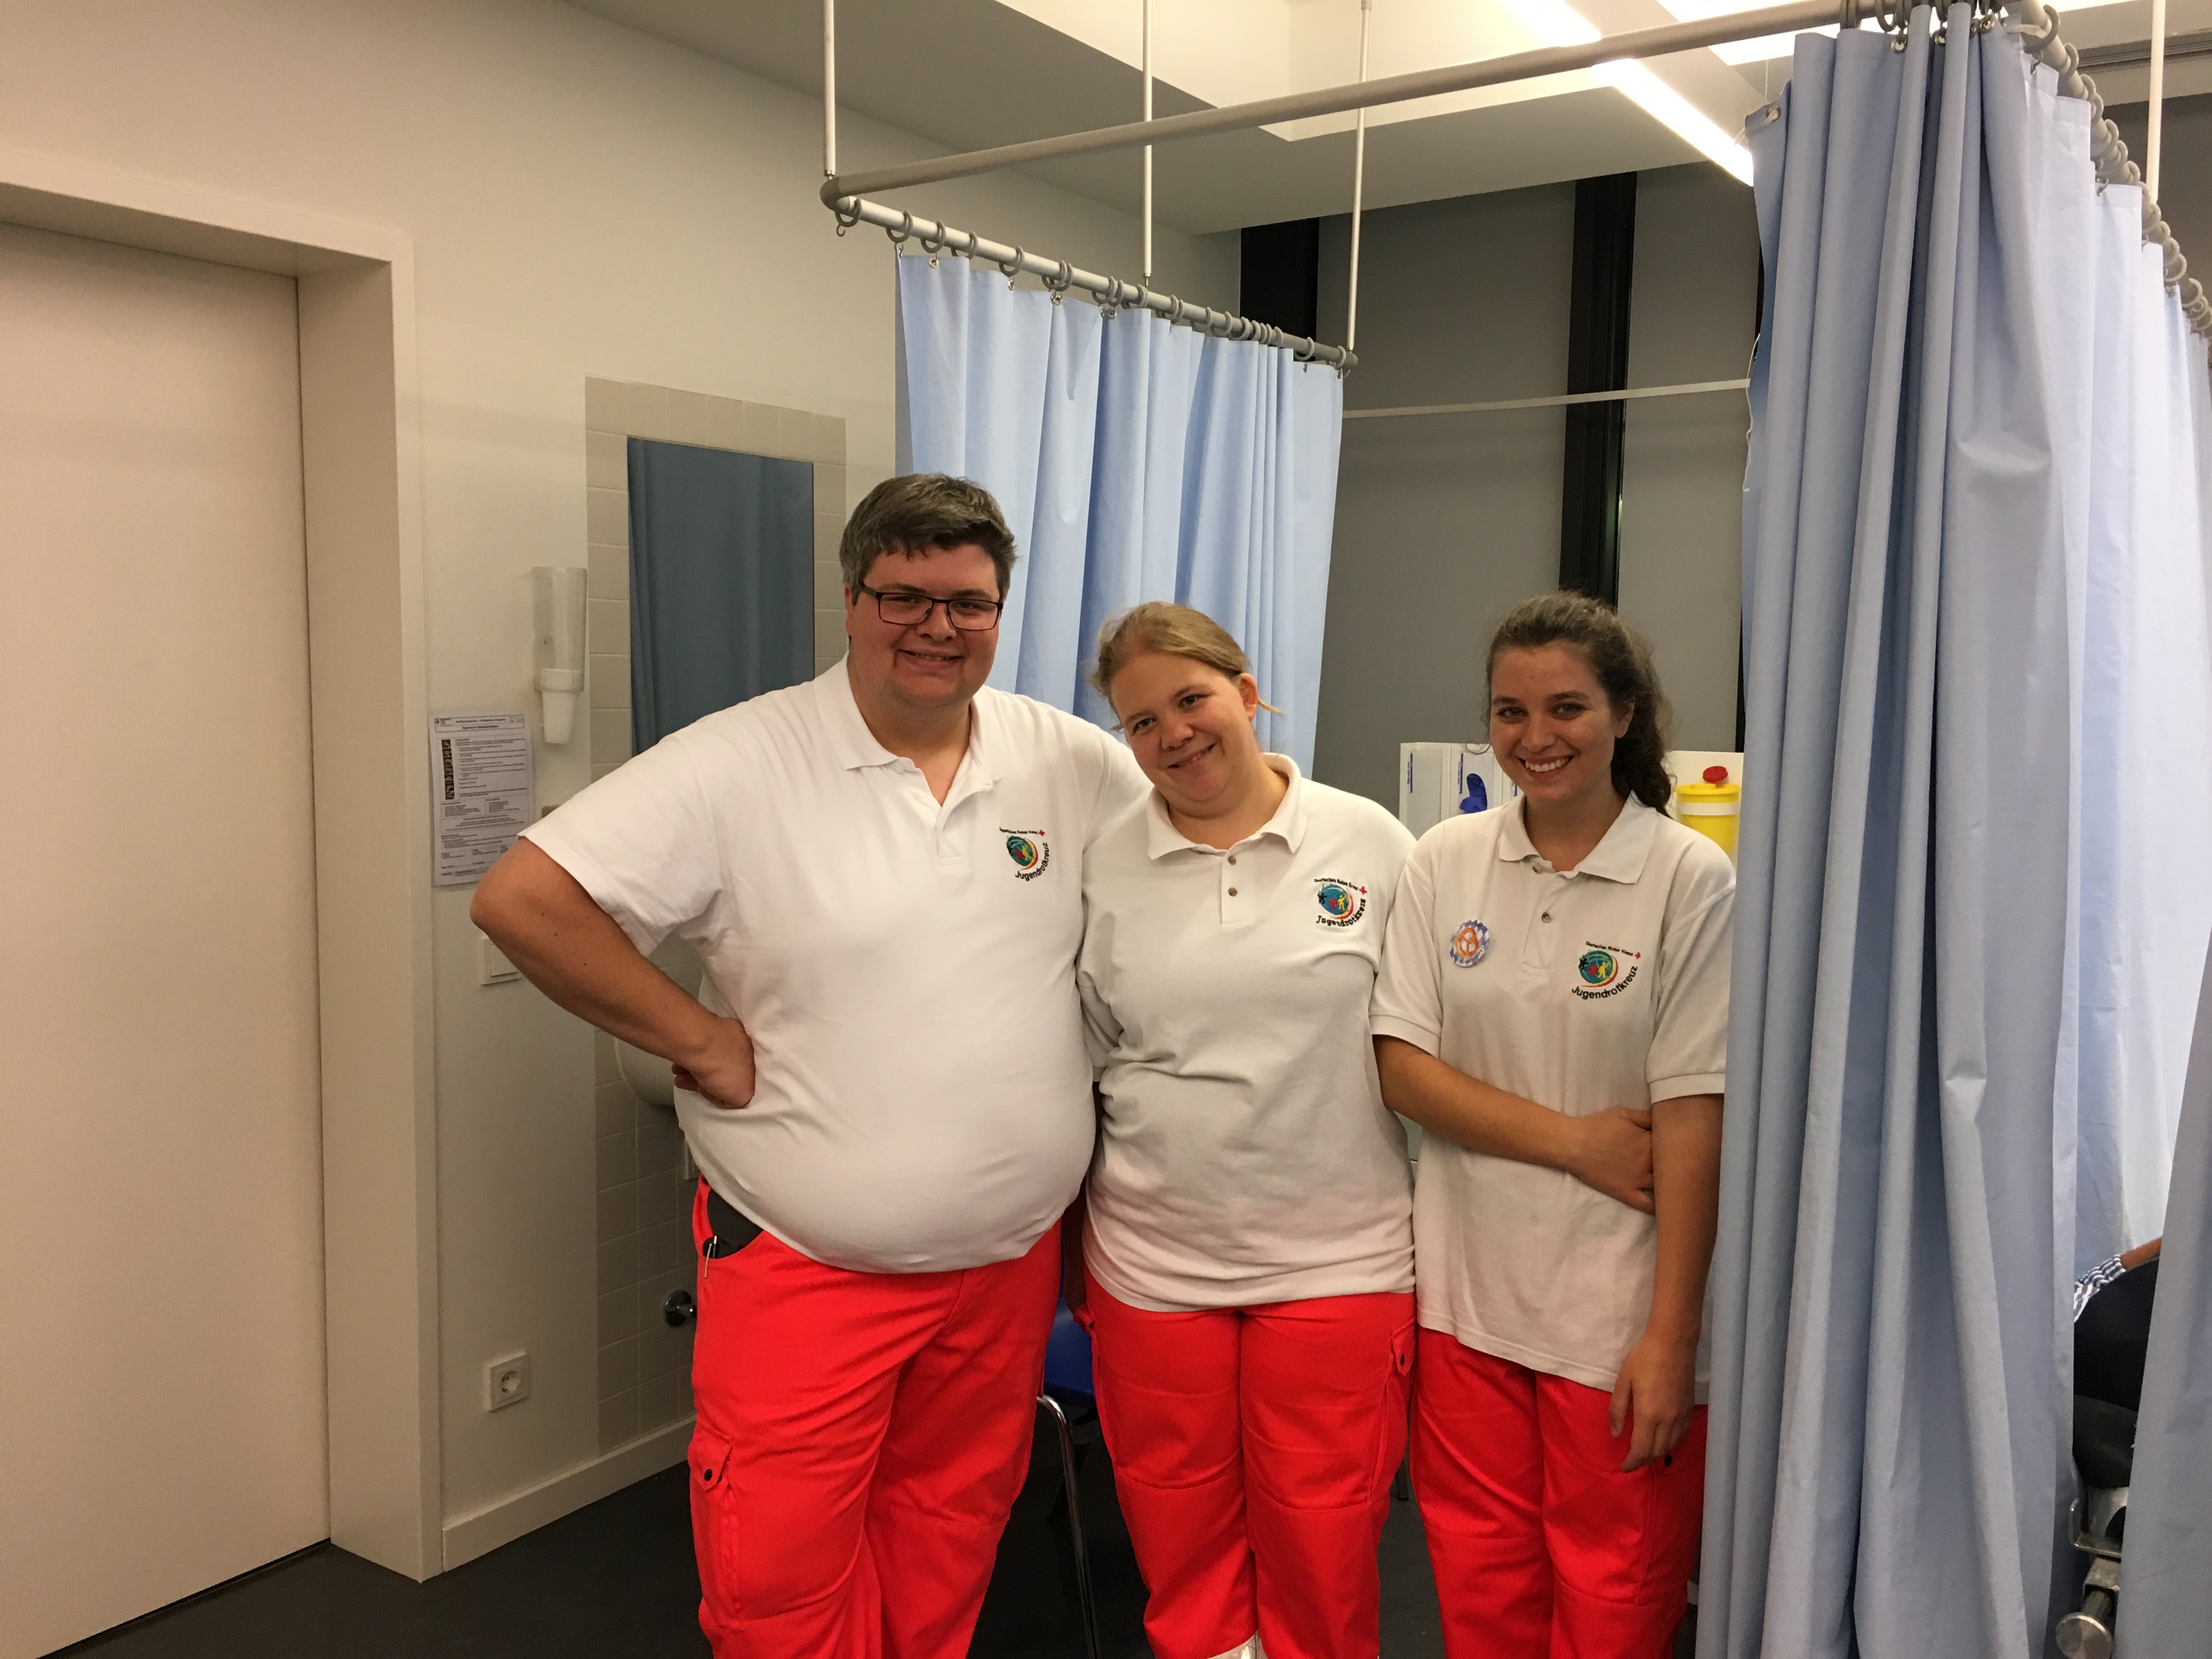 Sanitätisdienst auf der Wiesn: Im Behandlungsraum helfen Moritz, Michi und Elisabeth fleißig mit. Für ein Foto ist dennoch kurz Zeit. (Foto: Jugendrotkreuz)